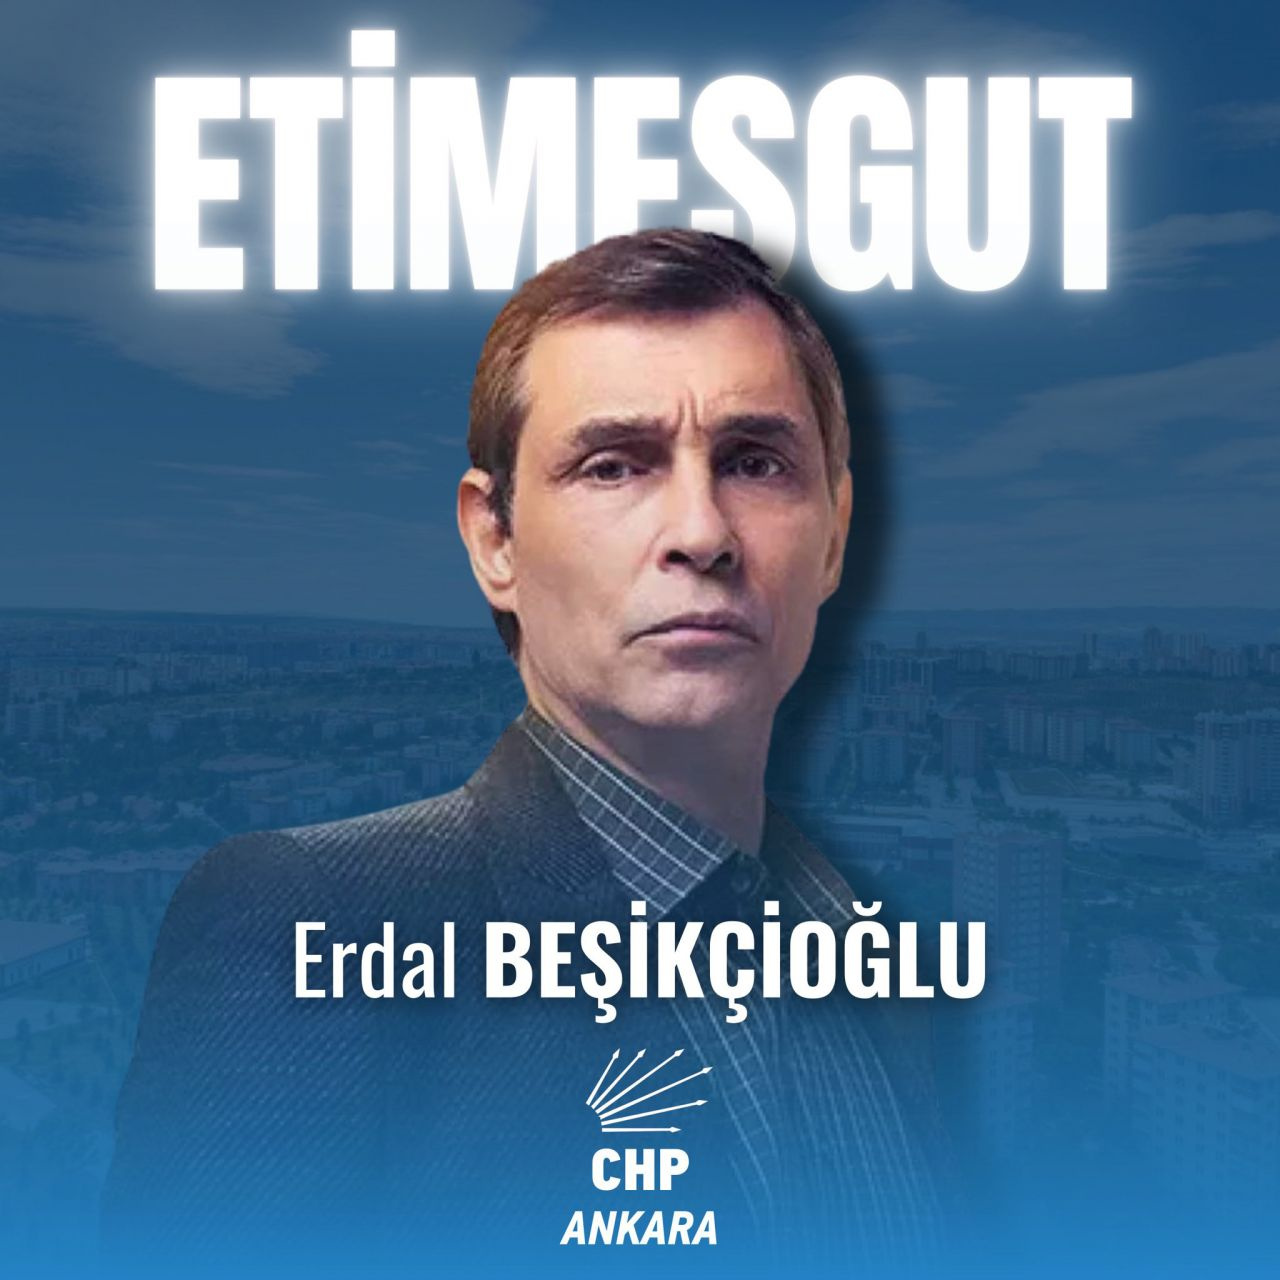 Behzat Ç., CHP'nin Etimesgut Belediye Başkan adayı oldu! Erdal Beşikçioğlu kimdir eşi ve çocukları